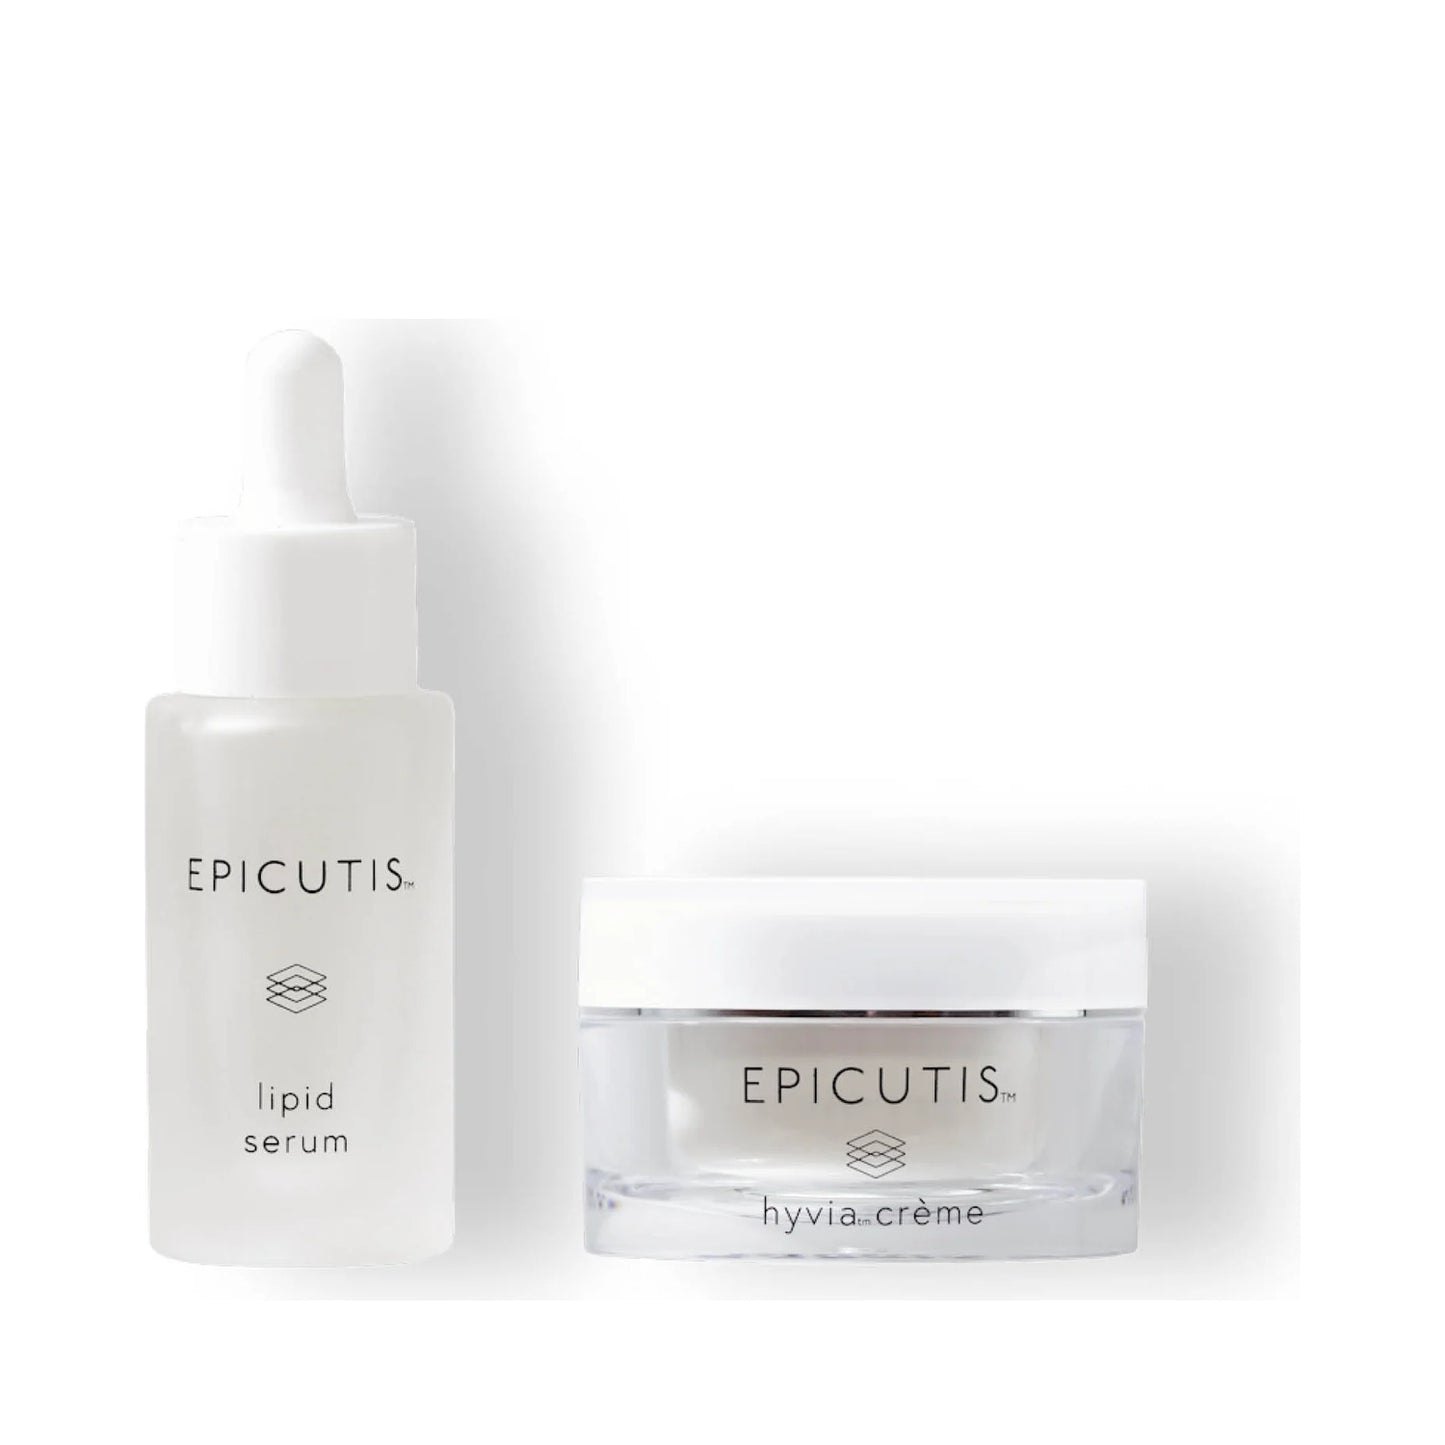 Epicutis Luxury Skincare